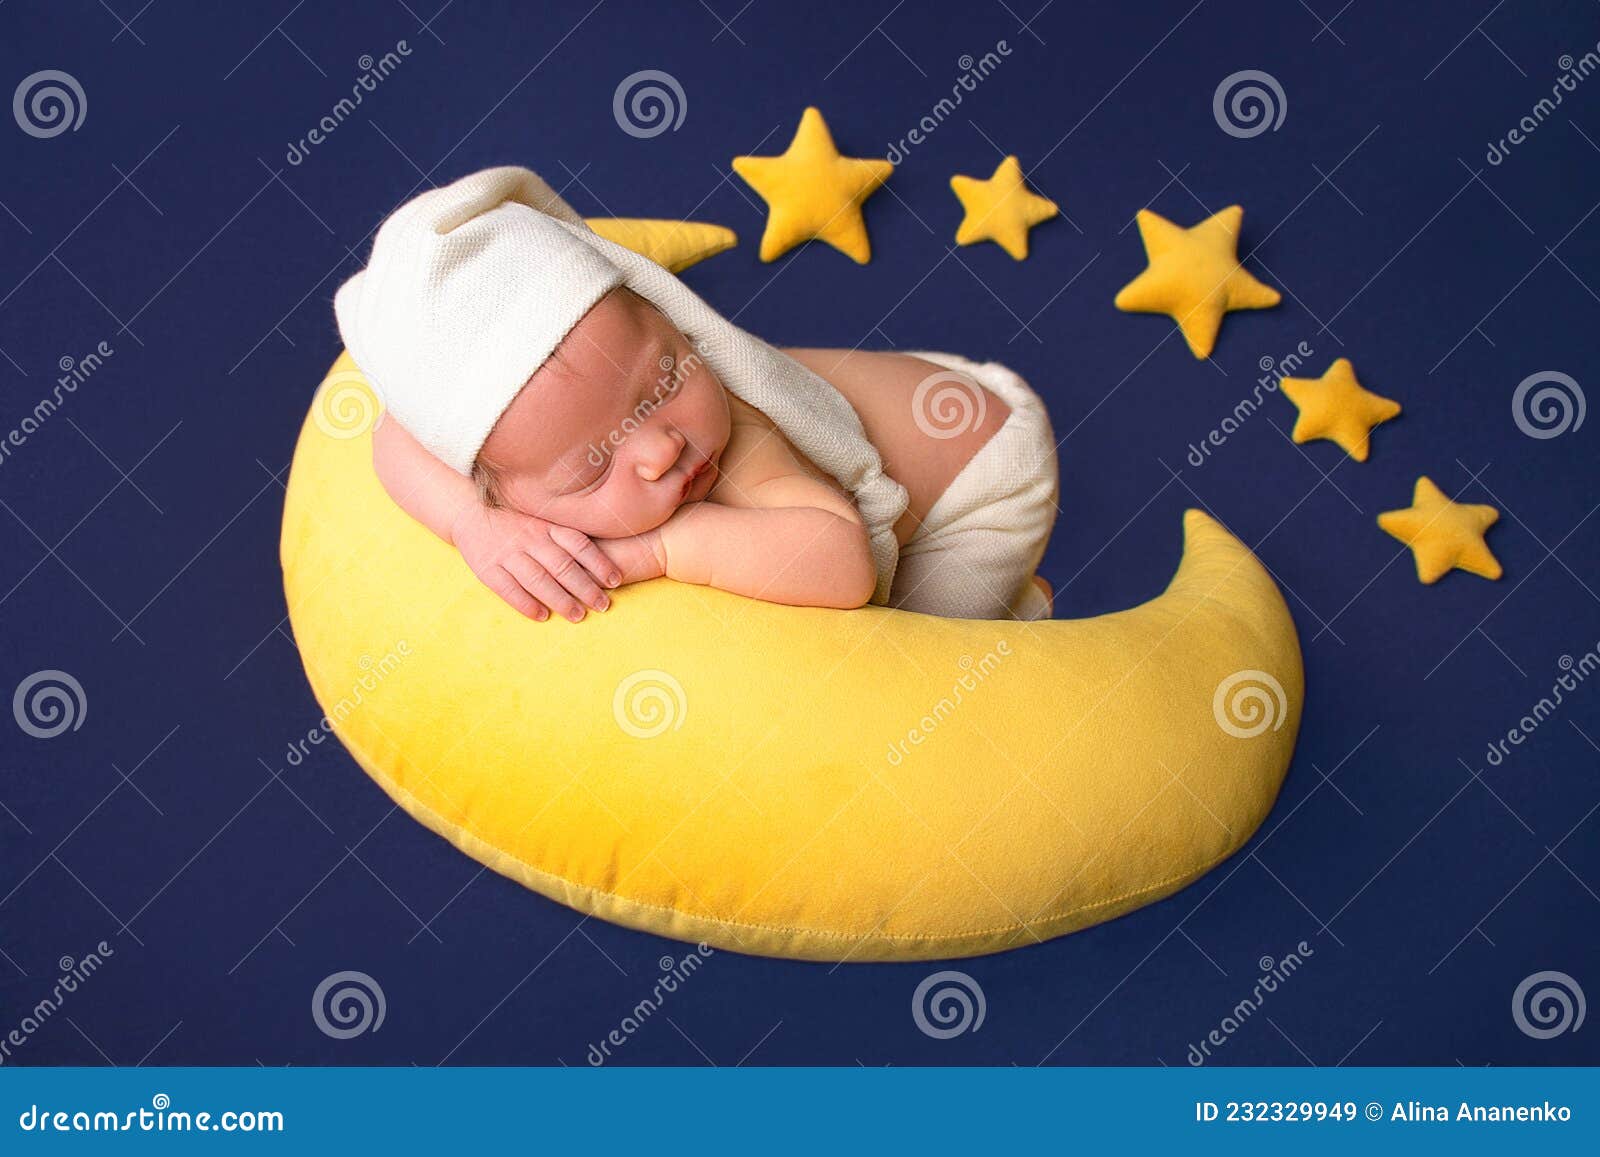 Recién Nacido Bebé Disfraz - Foto gratis en Pixabay - Pixabay